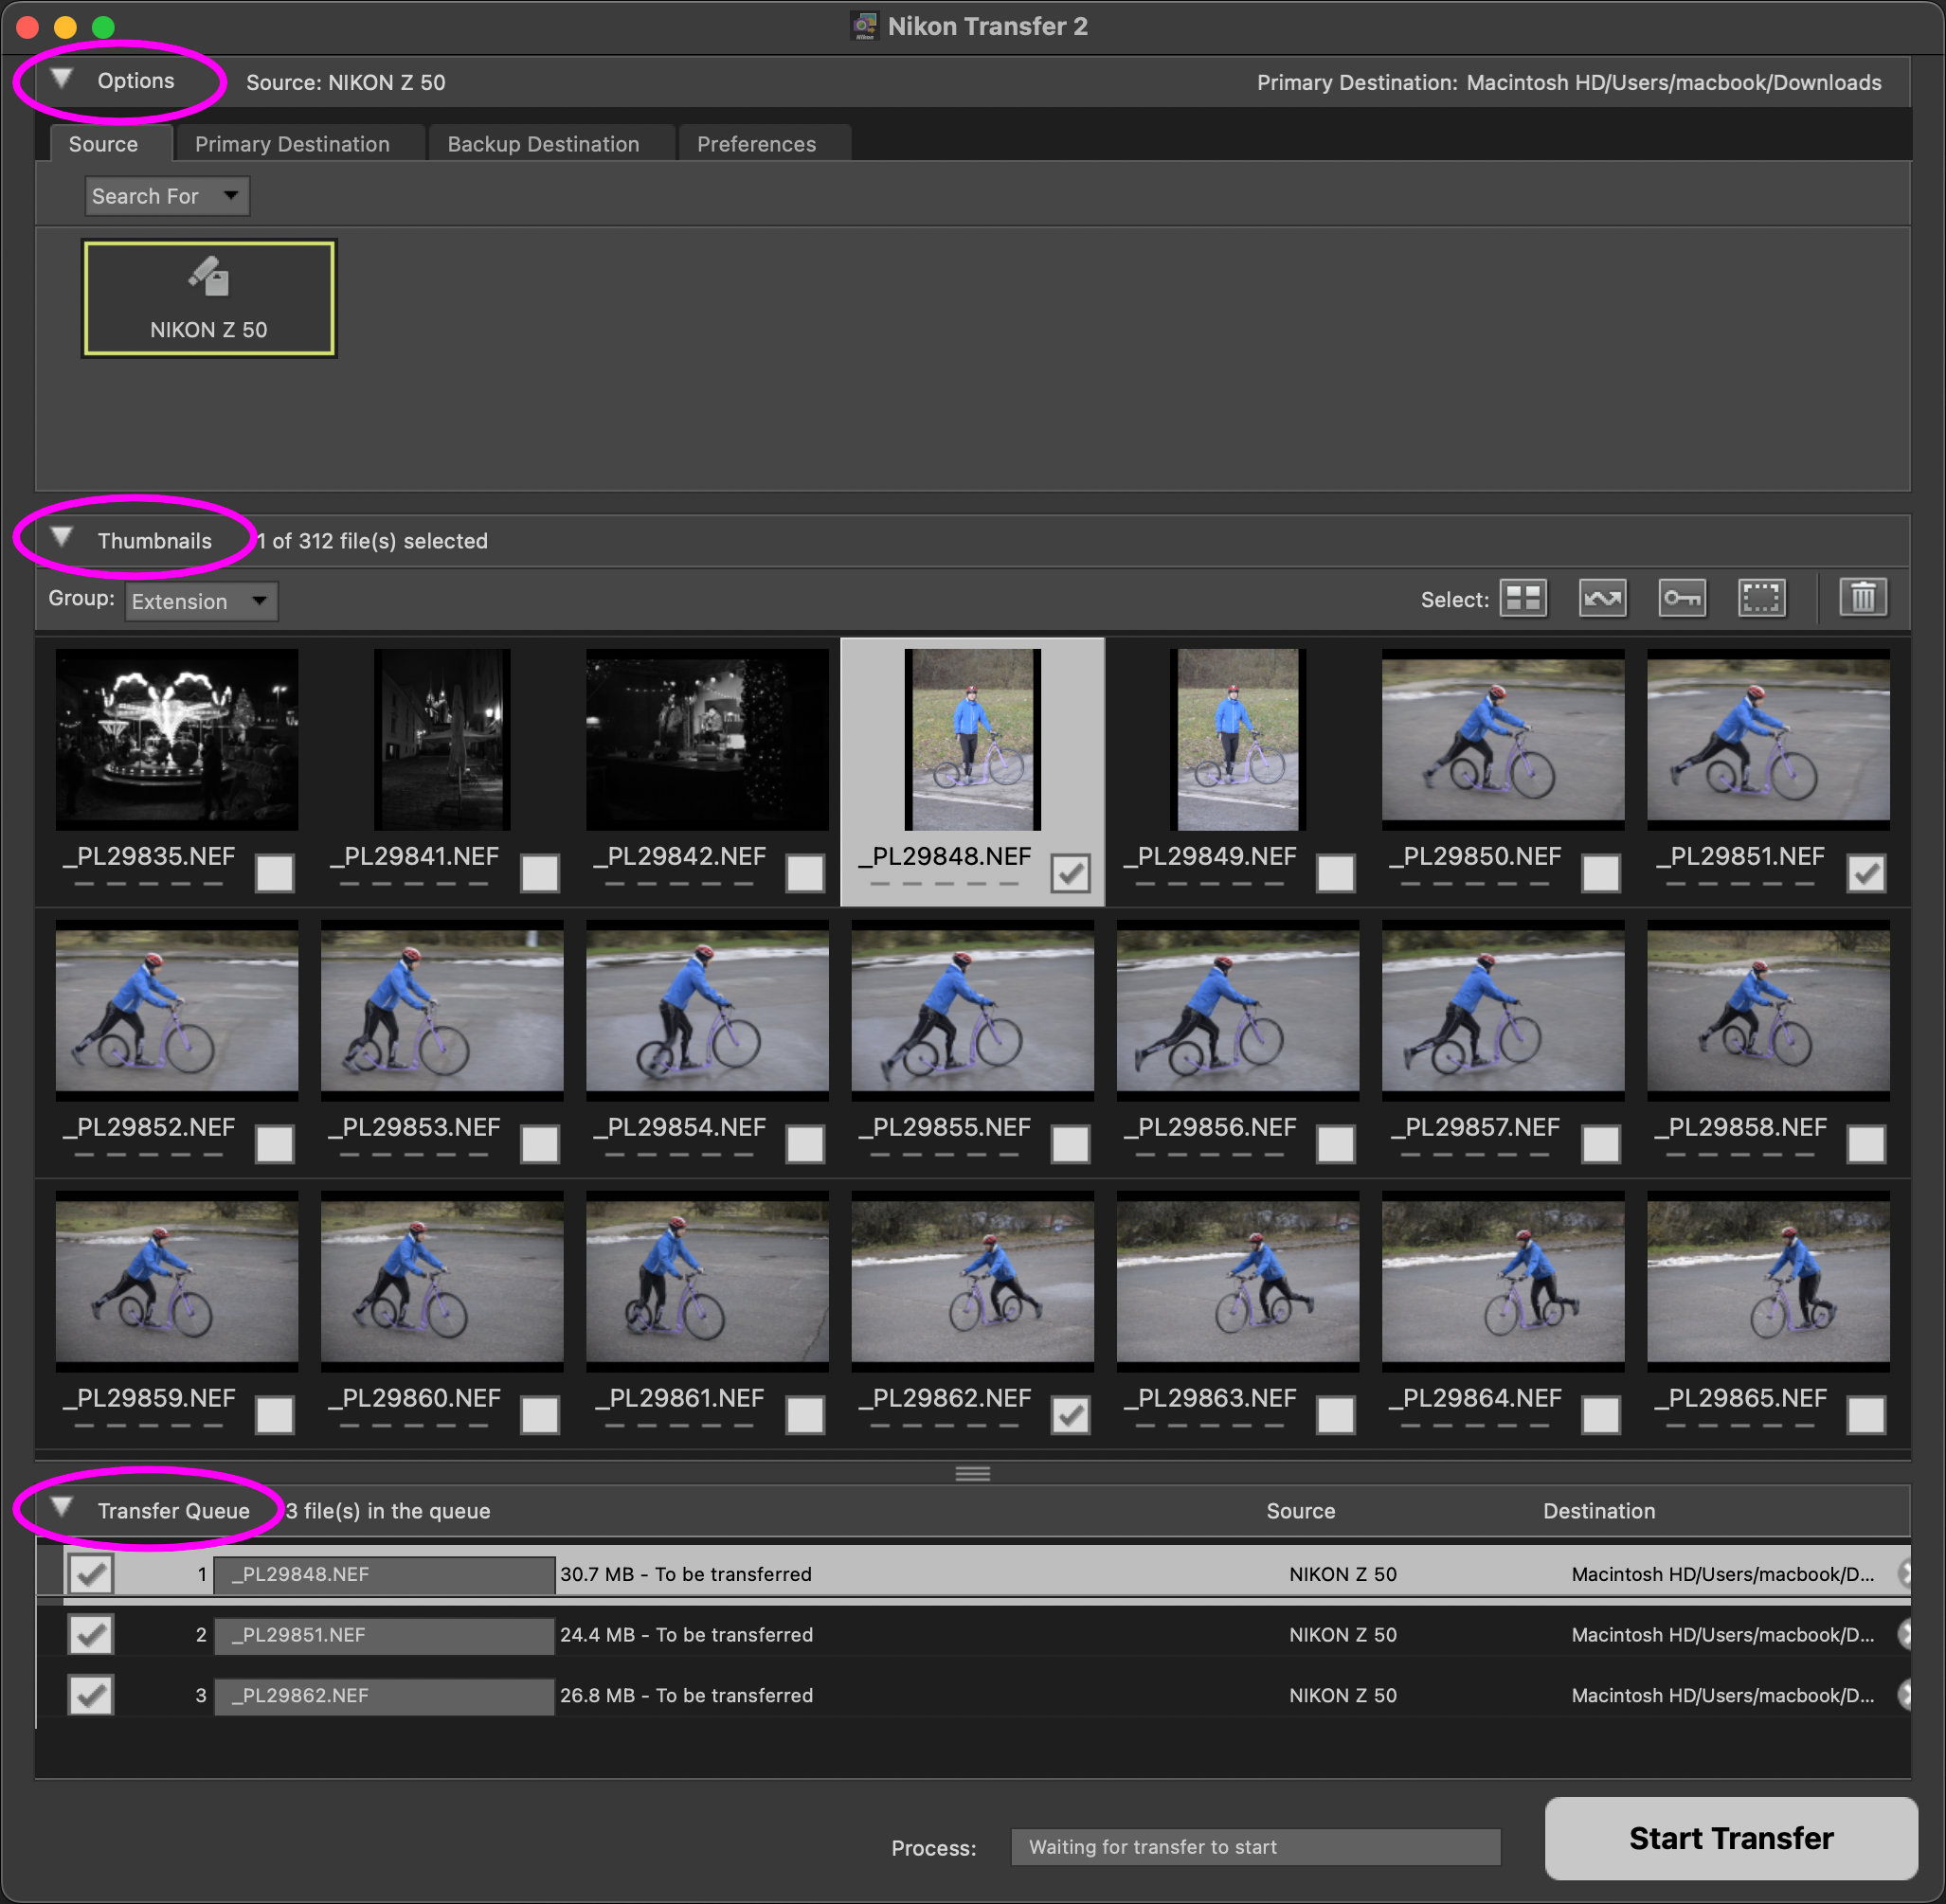 Okno aplikace Nikon Transfer 2 je horizontálně rozdělené na tři části – Options, Thumbnails a Transfer Queue, přičemž každou z nich lze pomocí trojúhelníkové šipky vlevo vedle jejího názvu rozbalit nebo sbalit